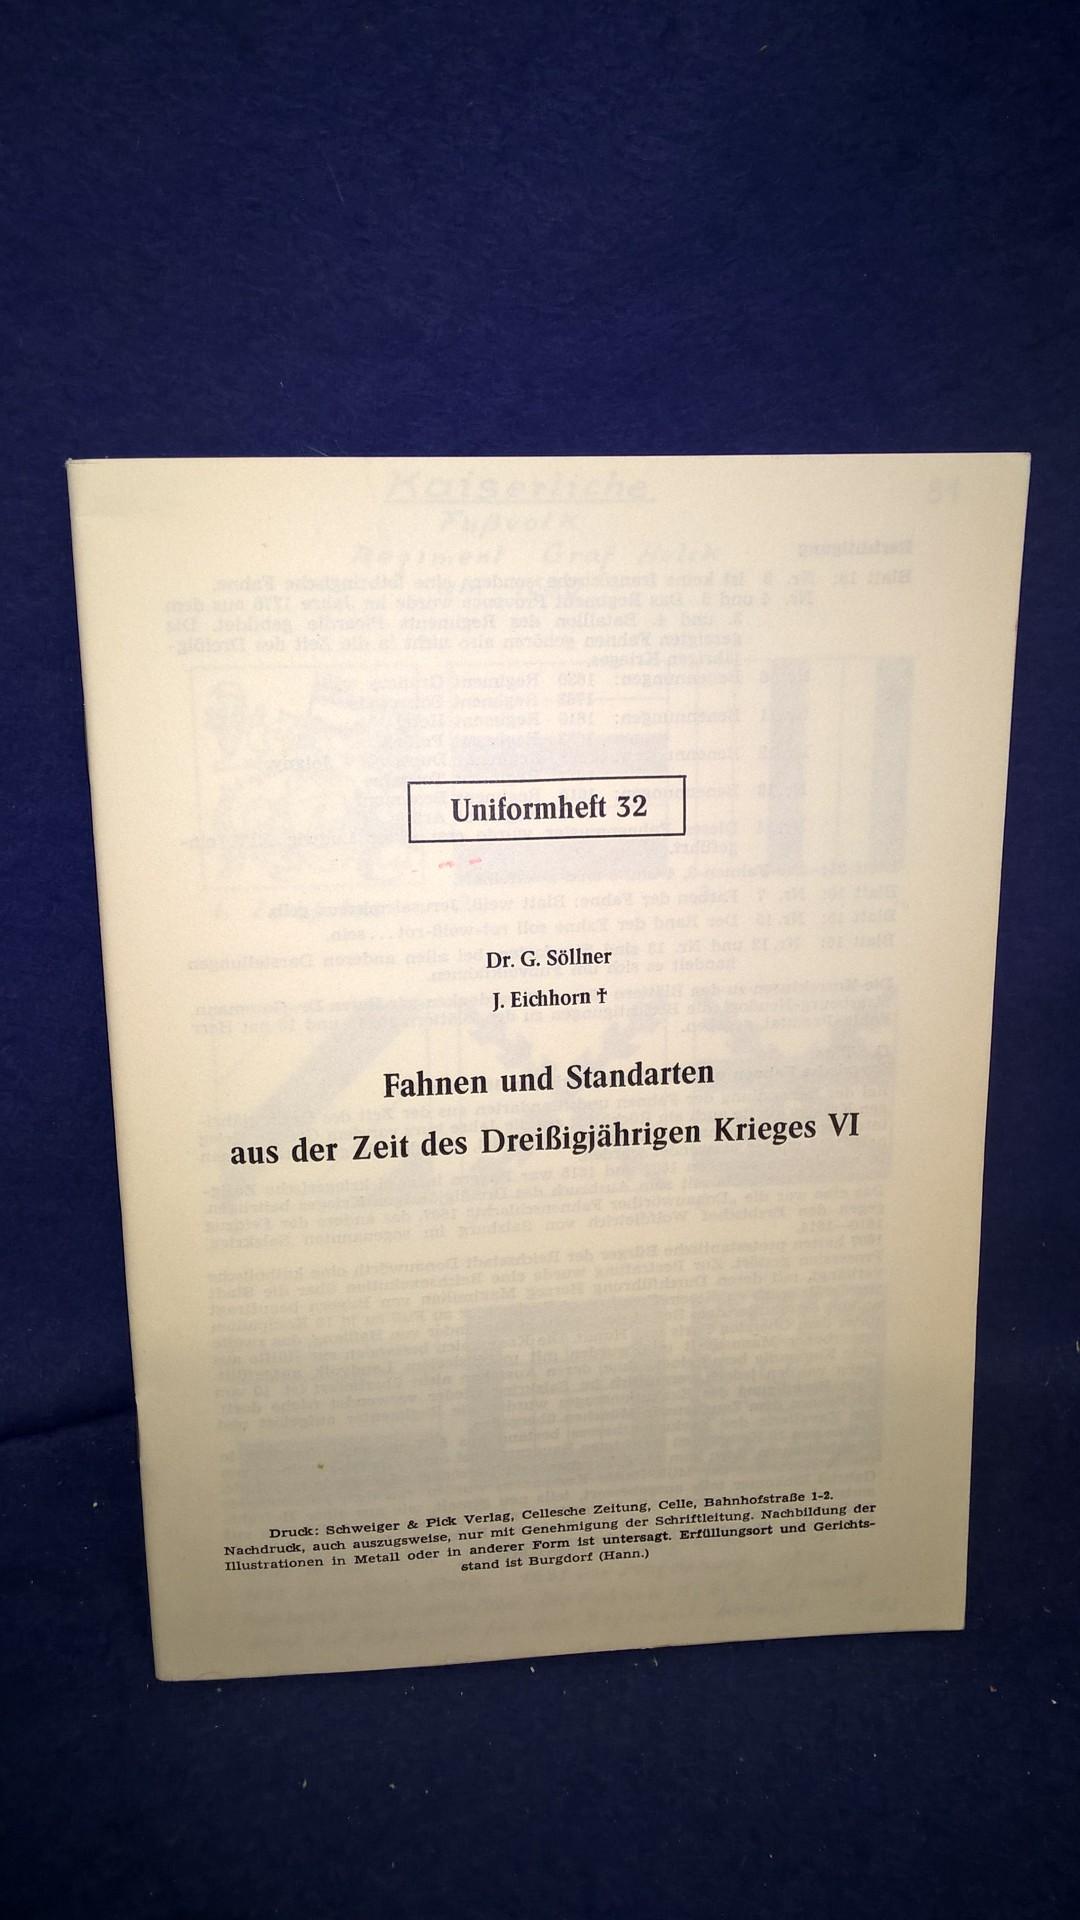 Fahnen und Standarten aus der Zeit des Dreißigjährigen Krieges, VI Teil. Aus der Reihe: Die Zinnfigur -Uniformheft 32-. Selten.